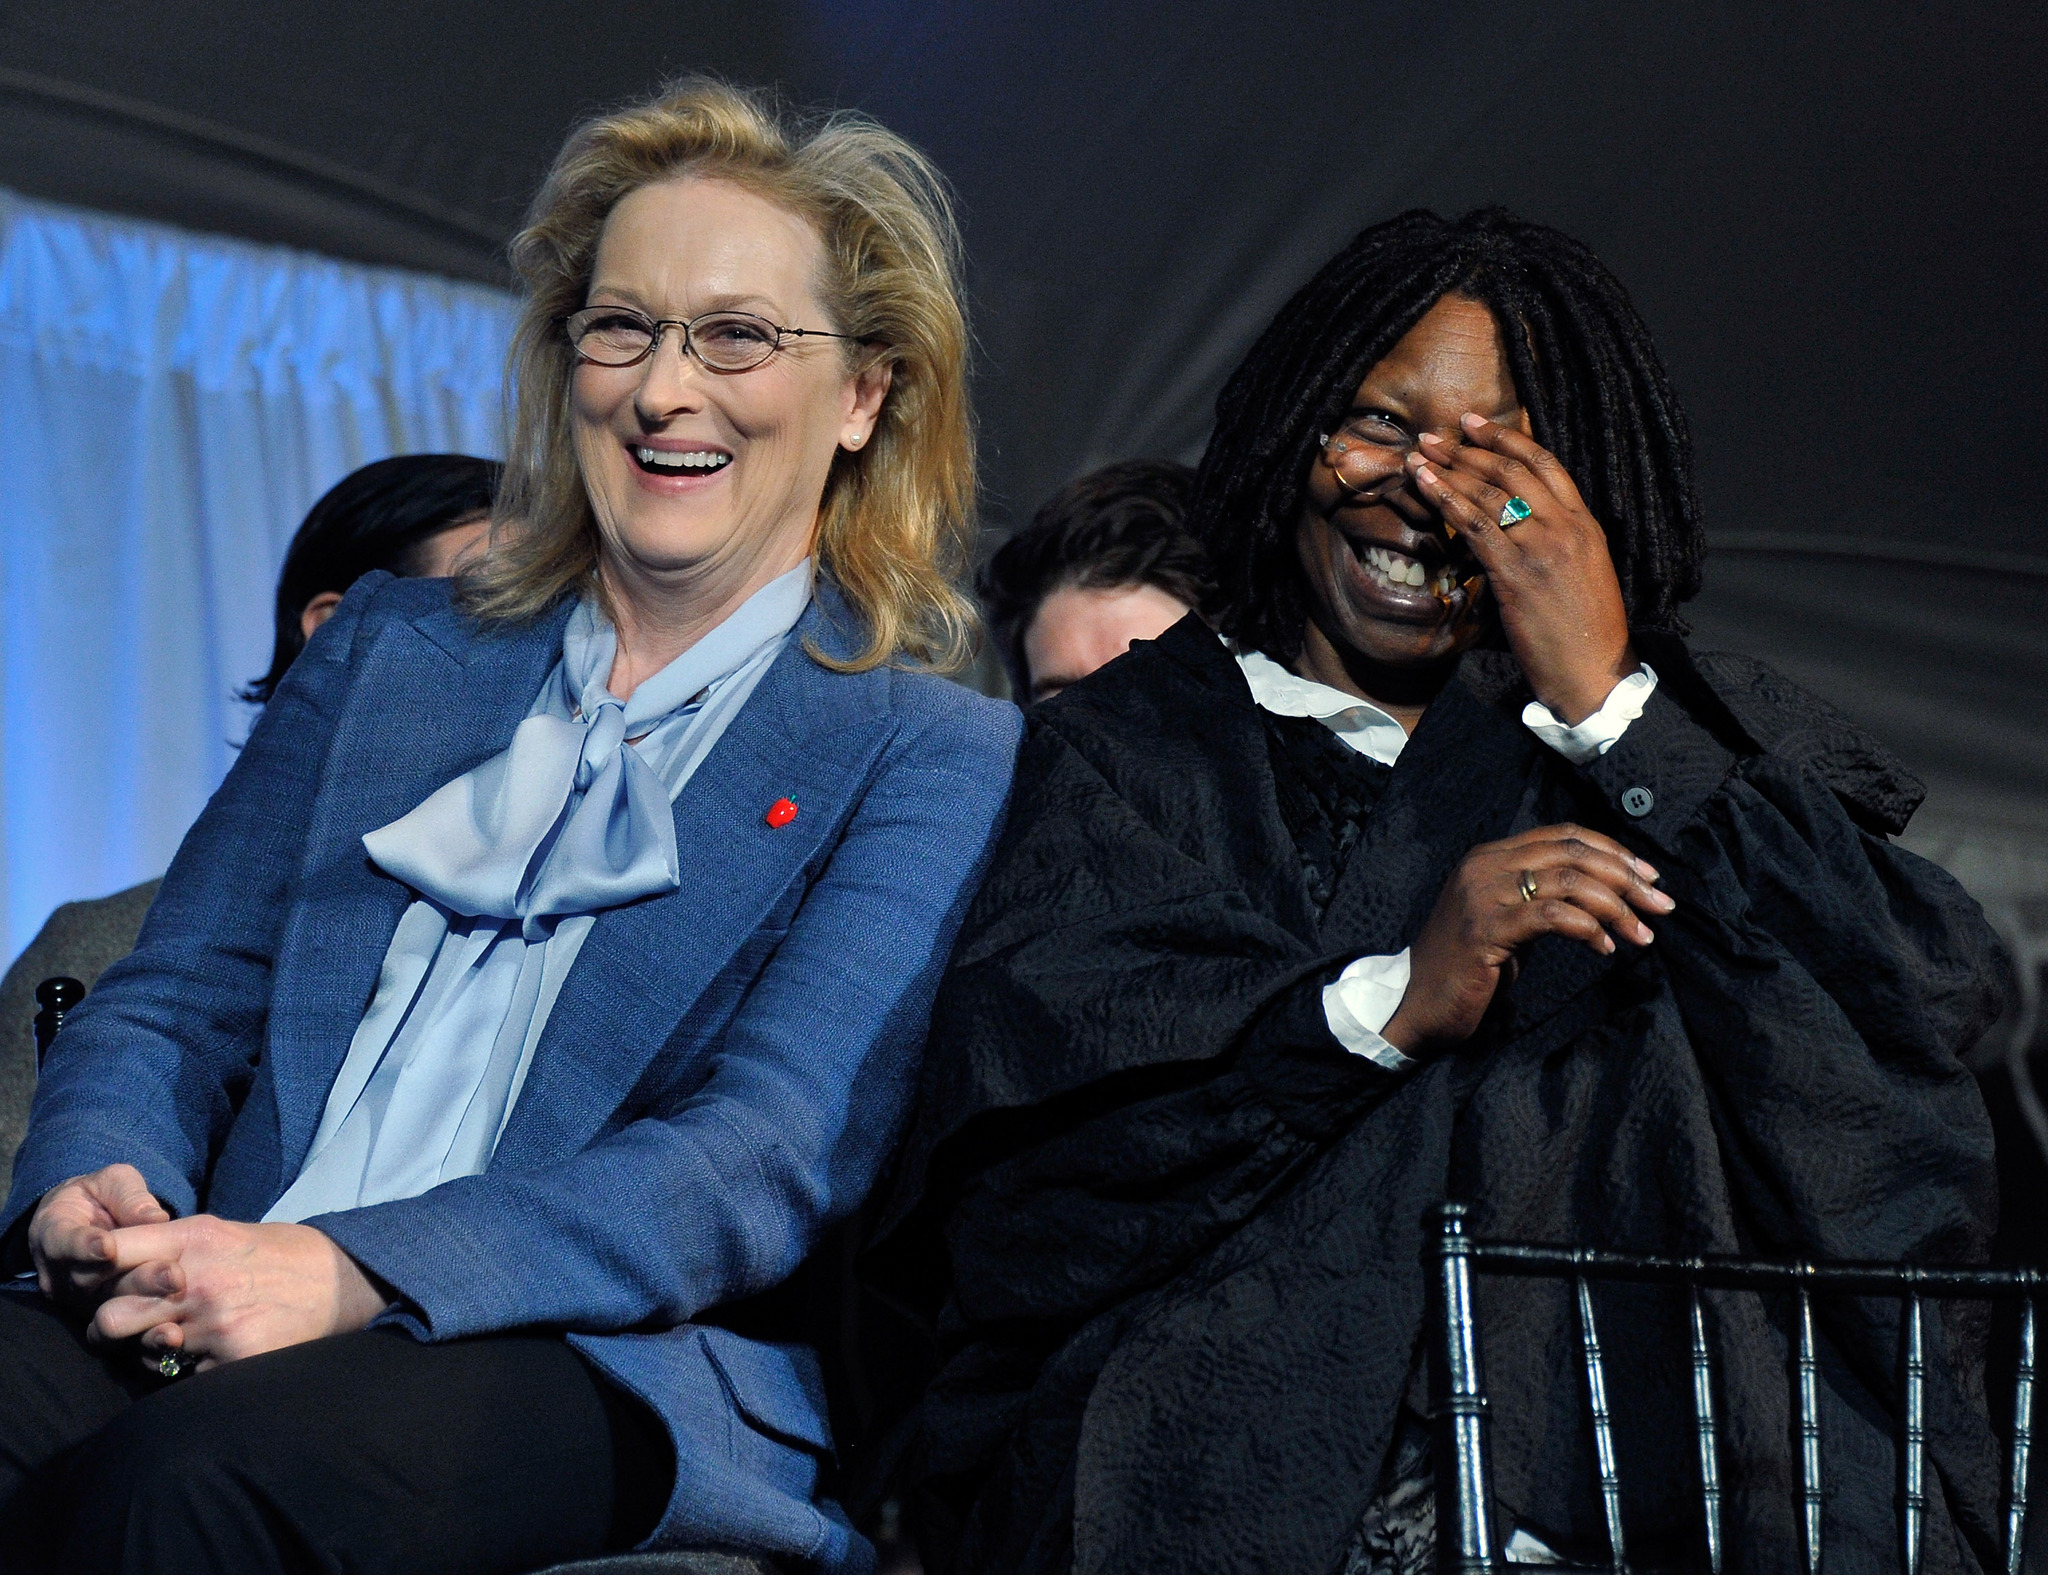 Whoopi Goldberg and Meryl Streep